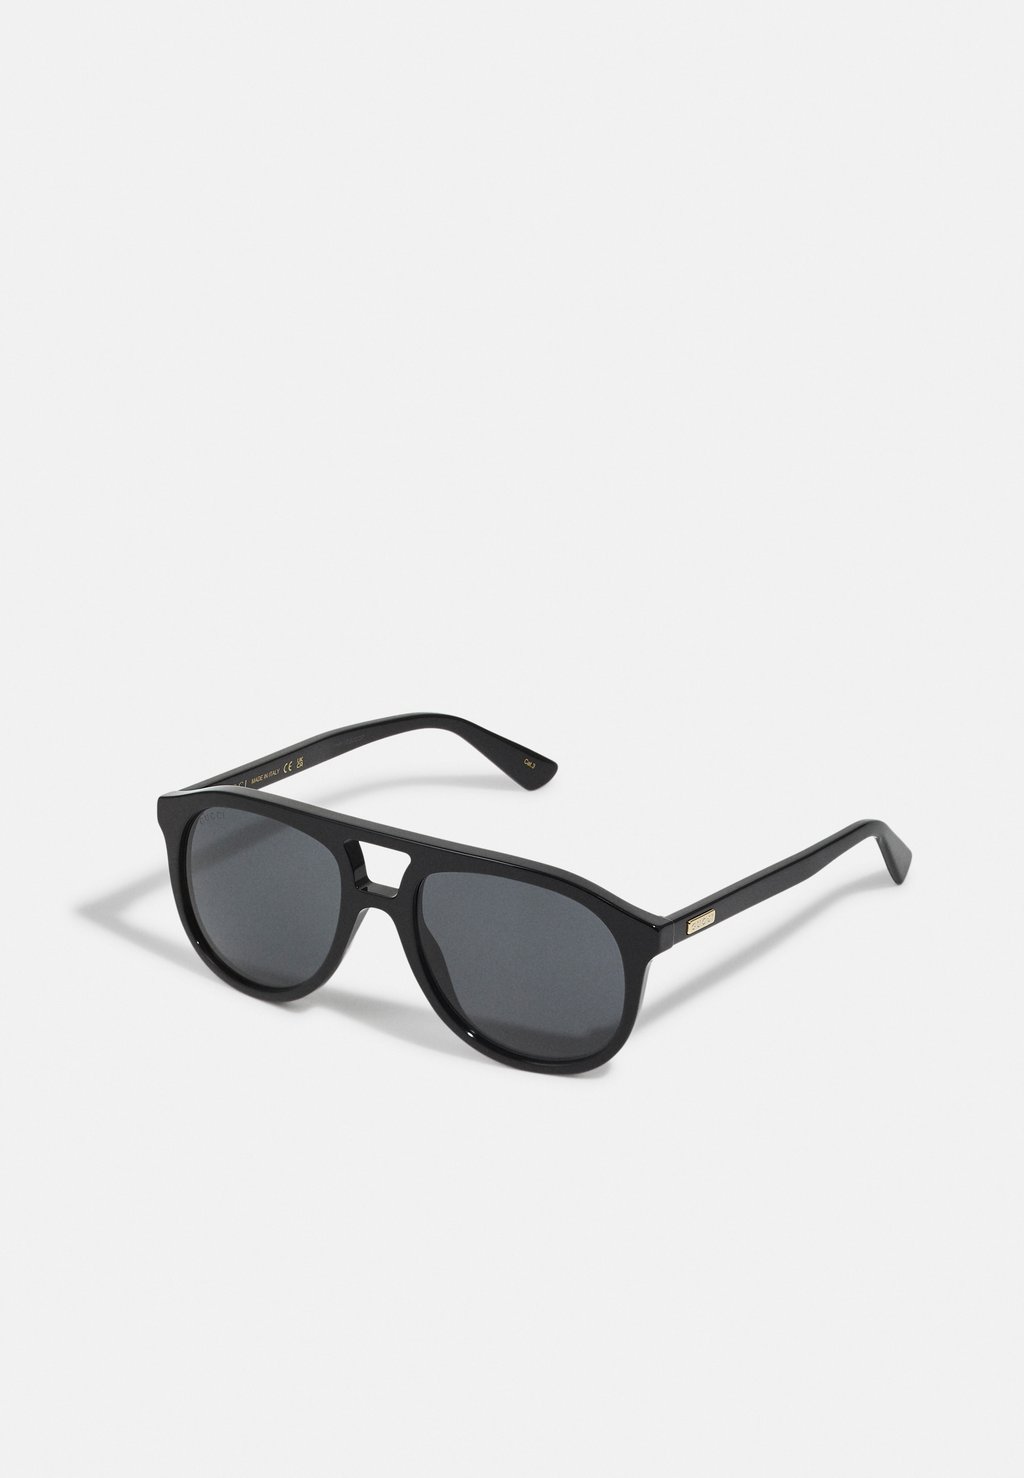 Солнцезащитные очки Unisex Gucci, цвет black/grey